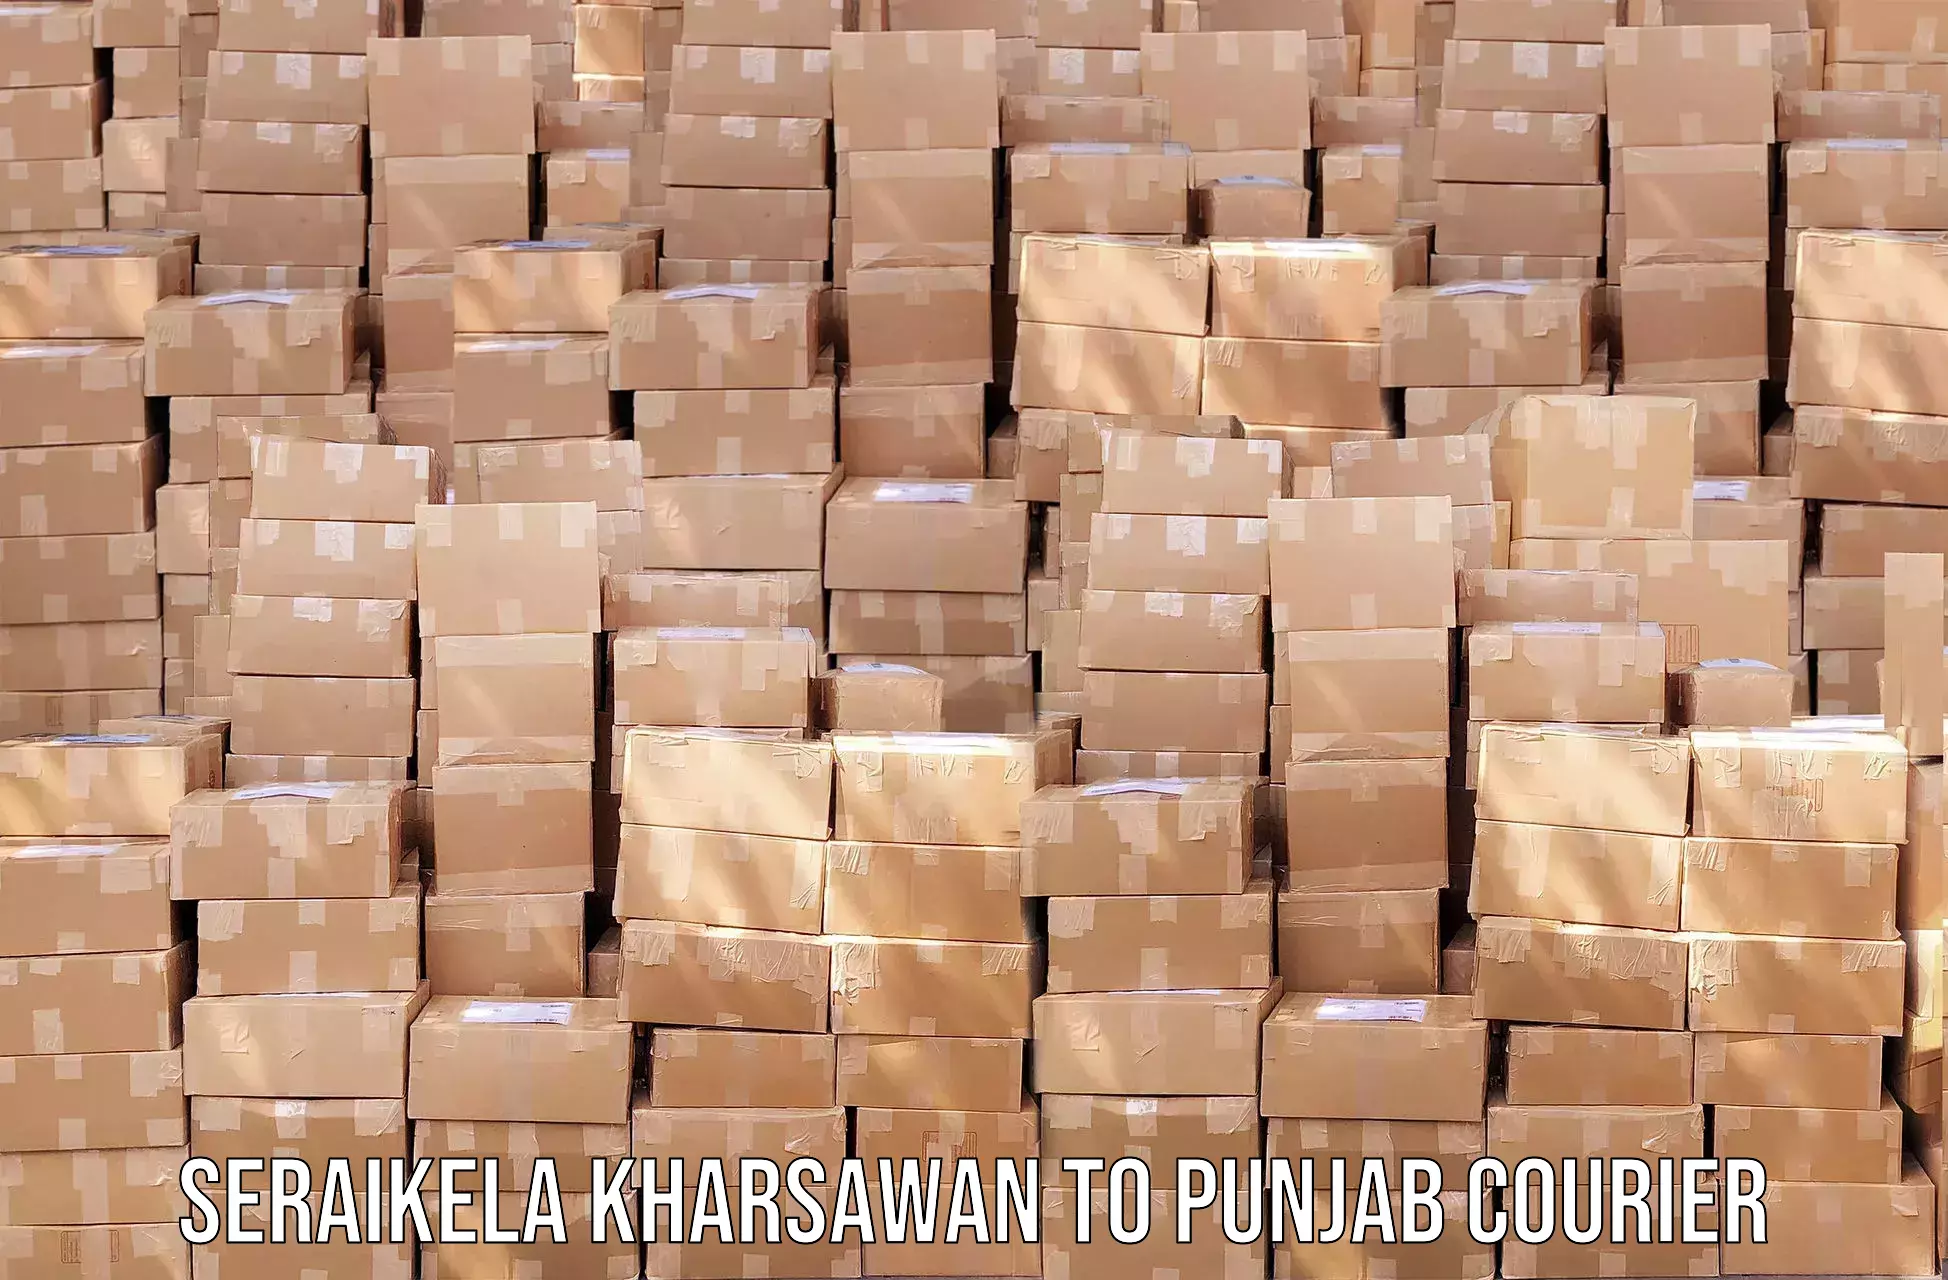 Express delivery network Seraikela Kharsawan to Punjab